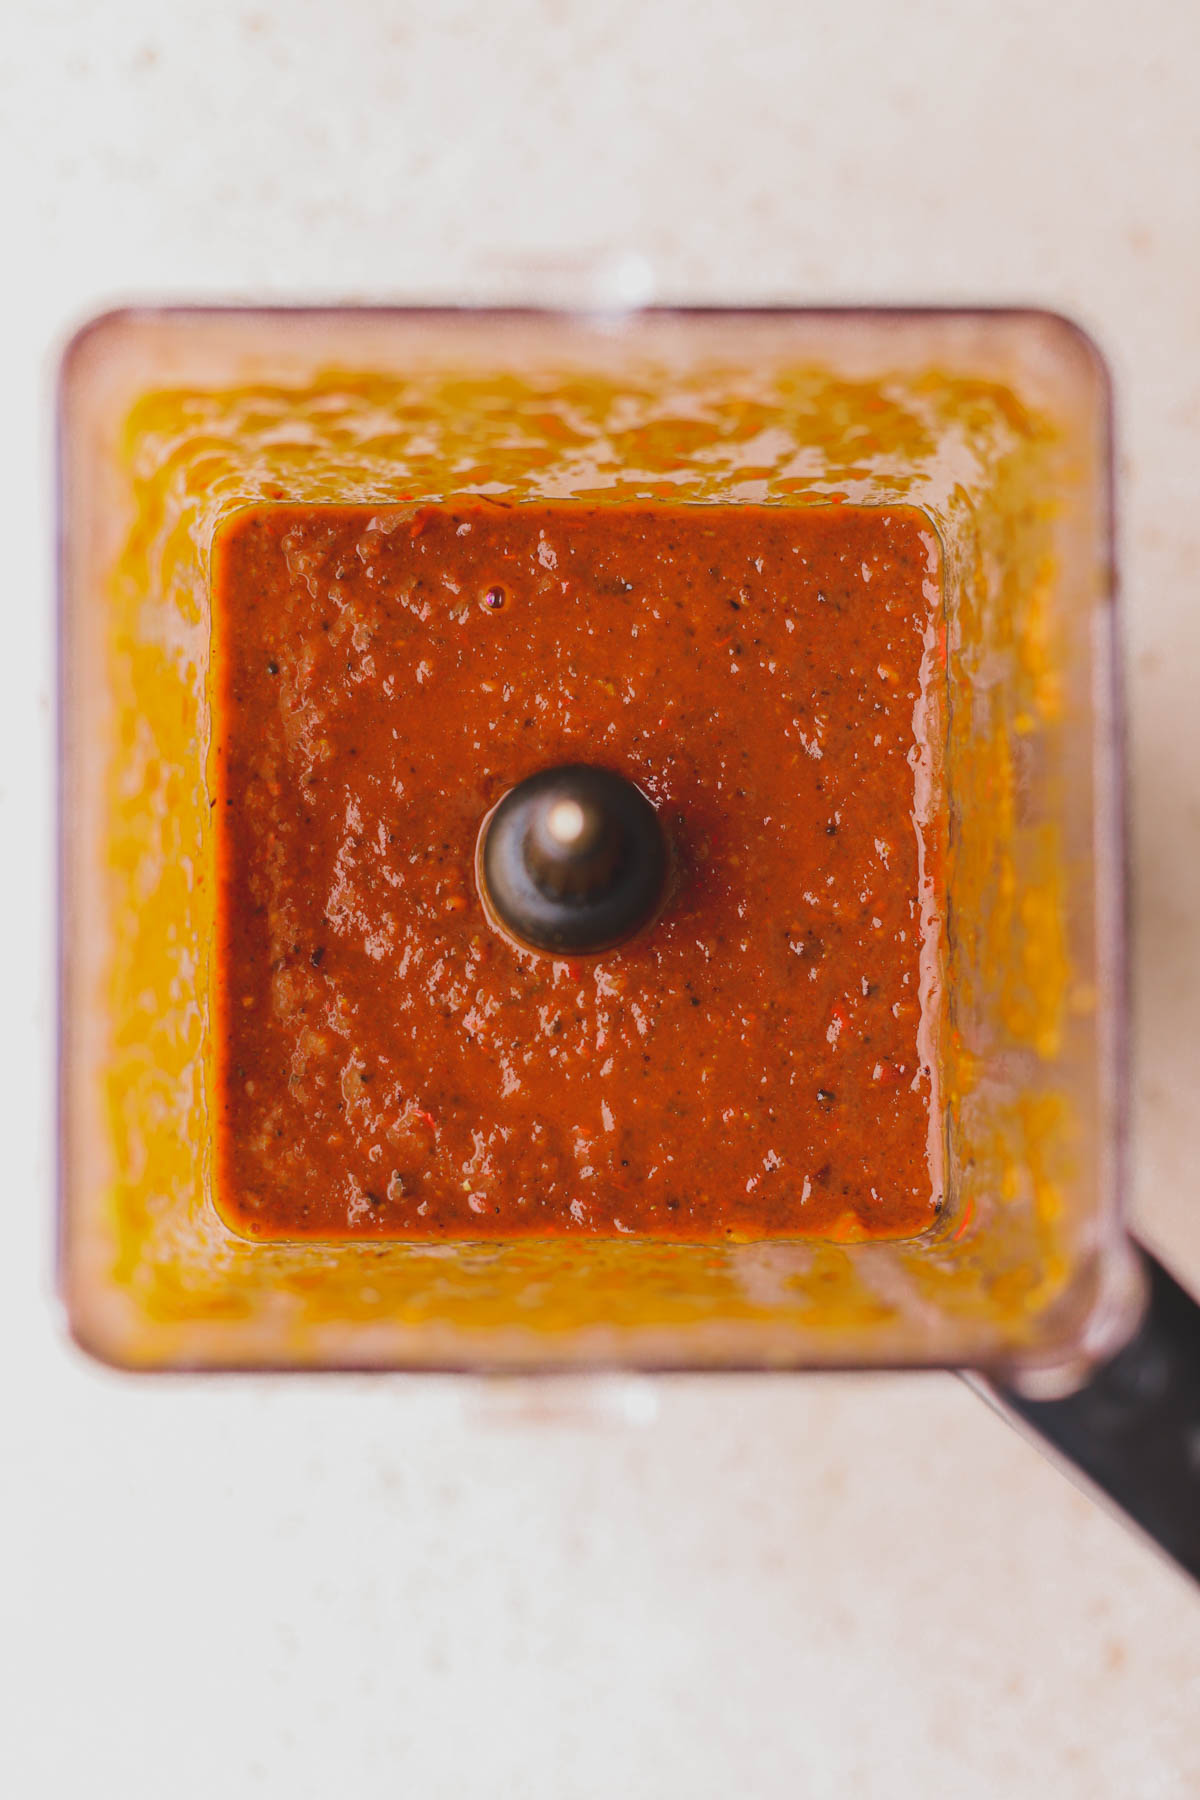 Blended chili sauce.  